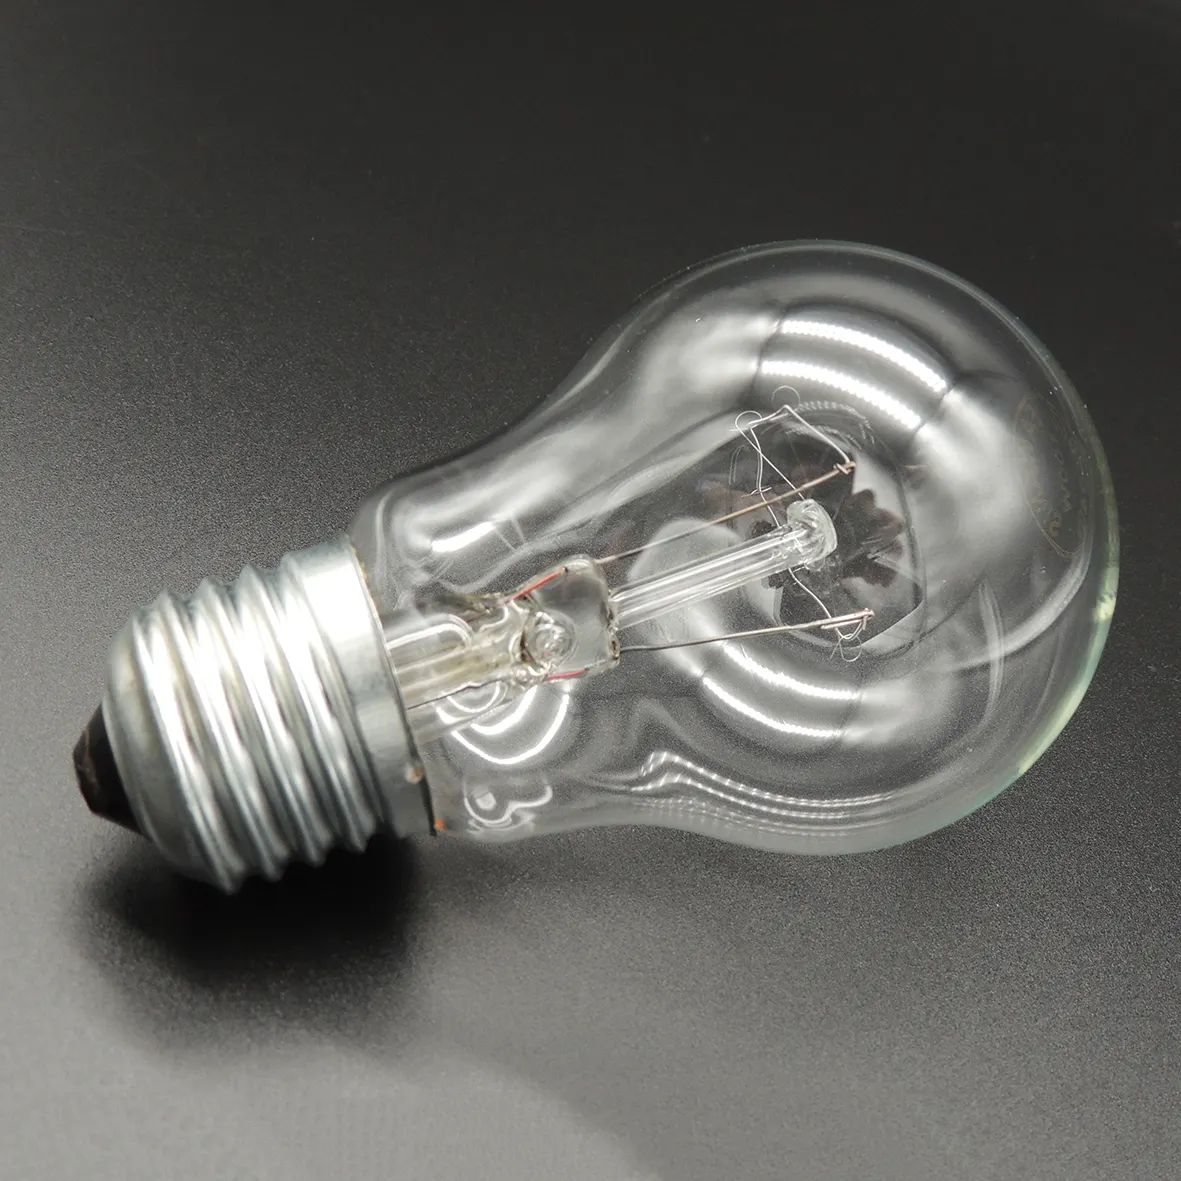 Best-Seller de Alta Qualidade 110v 220v E27 A19 75w 100w 150w 200w e27 lâmpada lâmpada Incandescente edison lâmpada